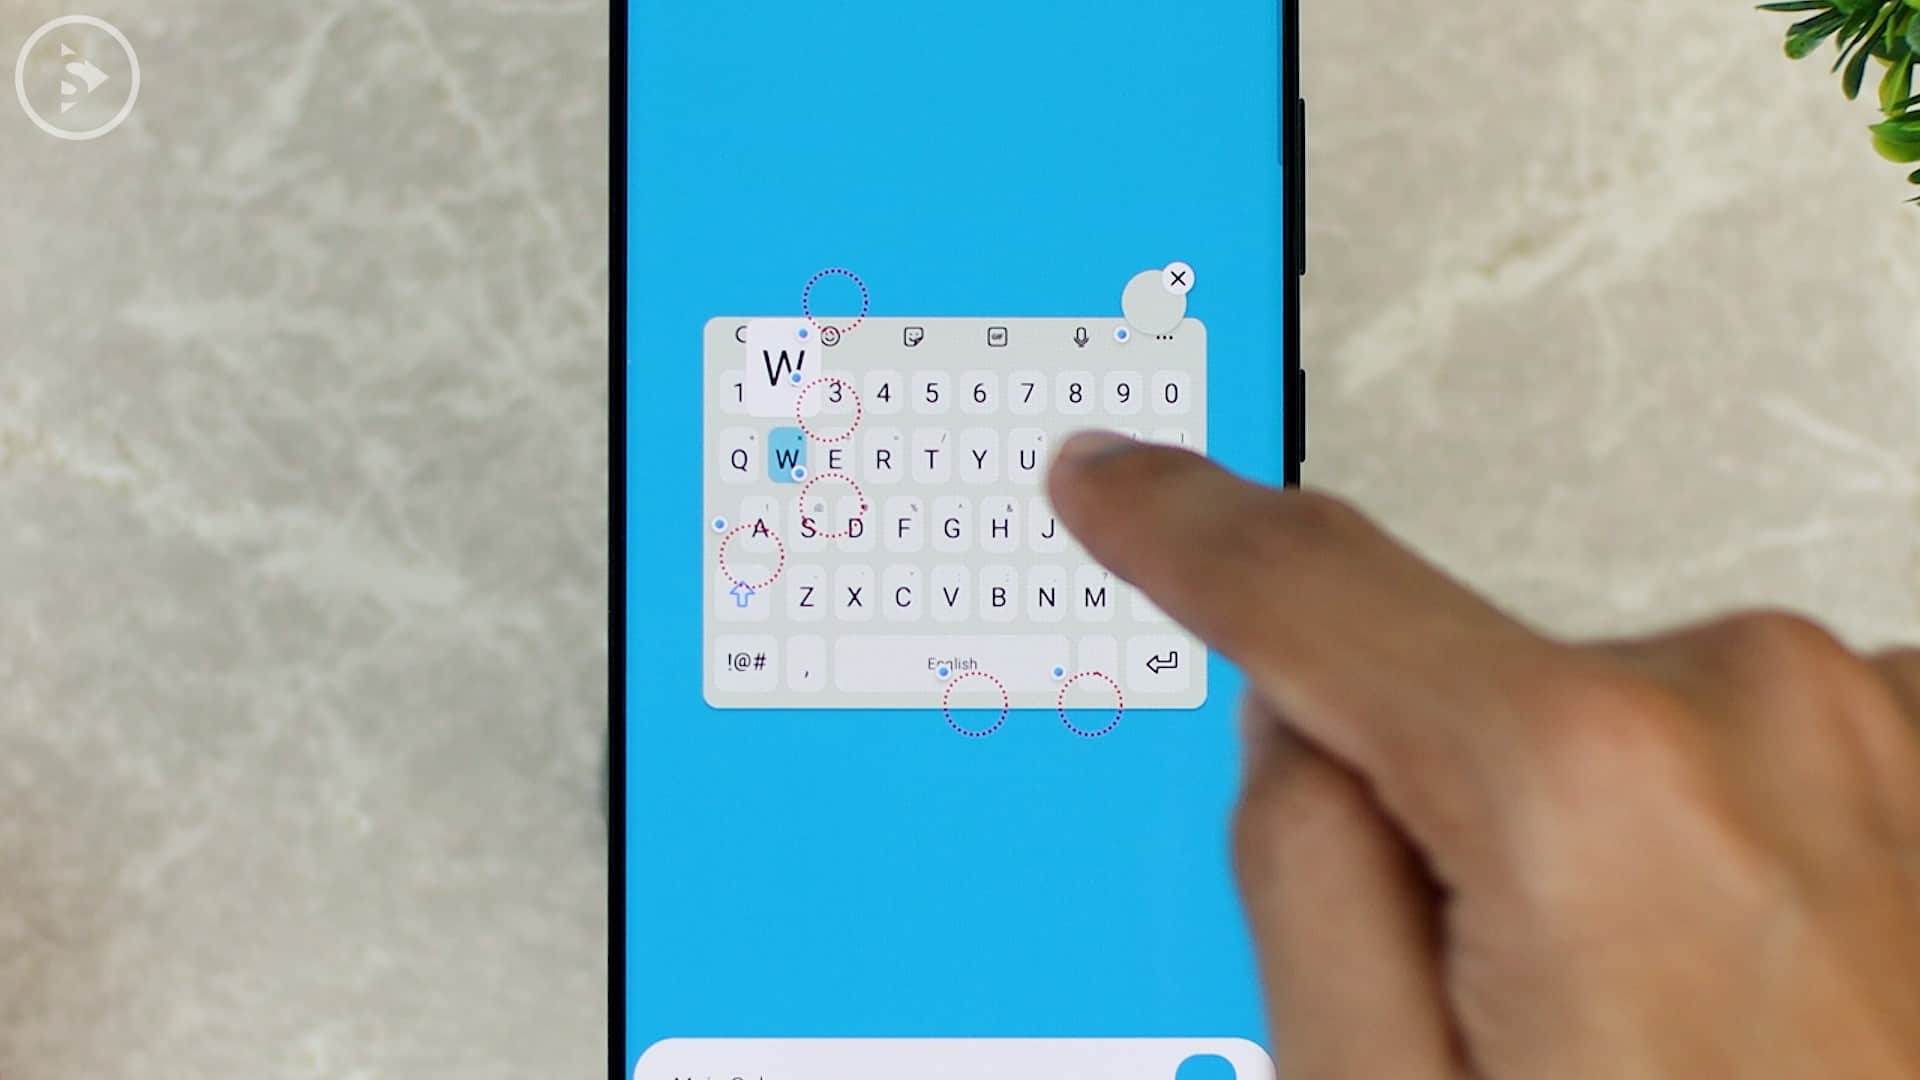 Cara Ganti Warna Keyboard di HP Samsung - Fitur Baru Good Lock - Pilih Warna Lain di lingkaran